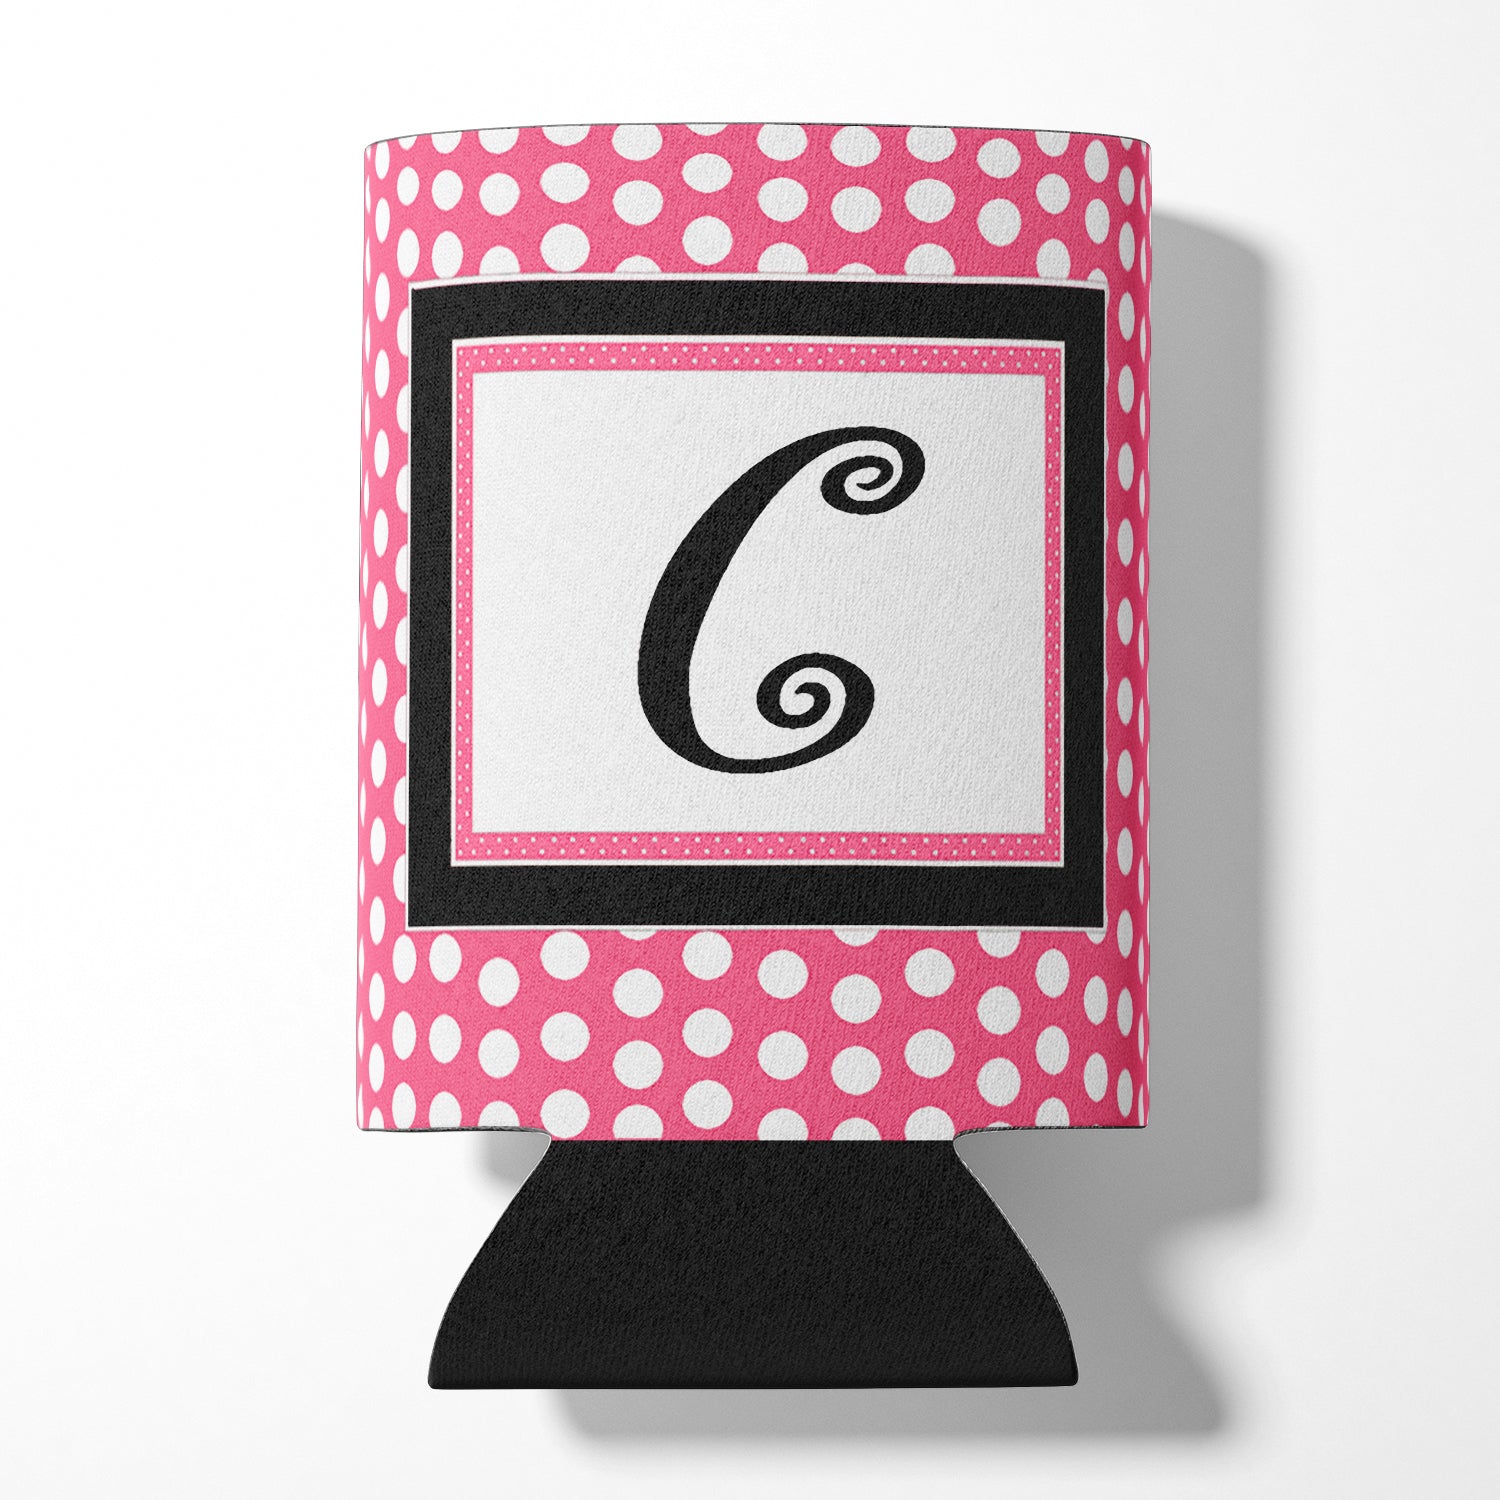 Letter C Initial Monogram - Pink Black Polka Dots Can or Bottle Beverage Insulator Hugger.